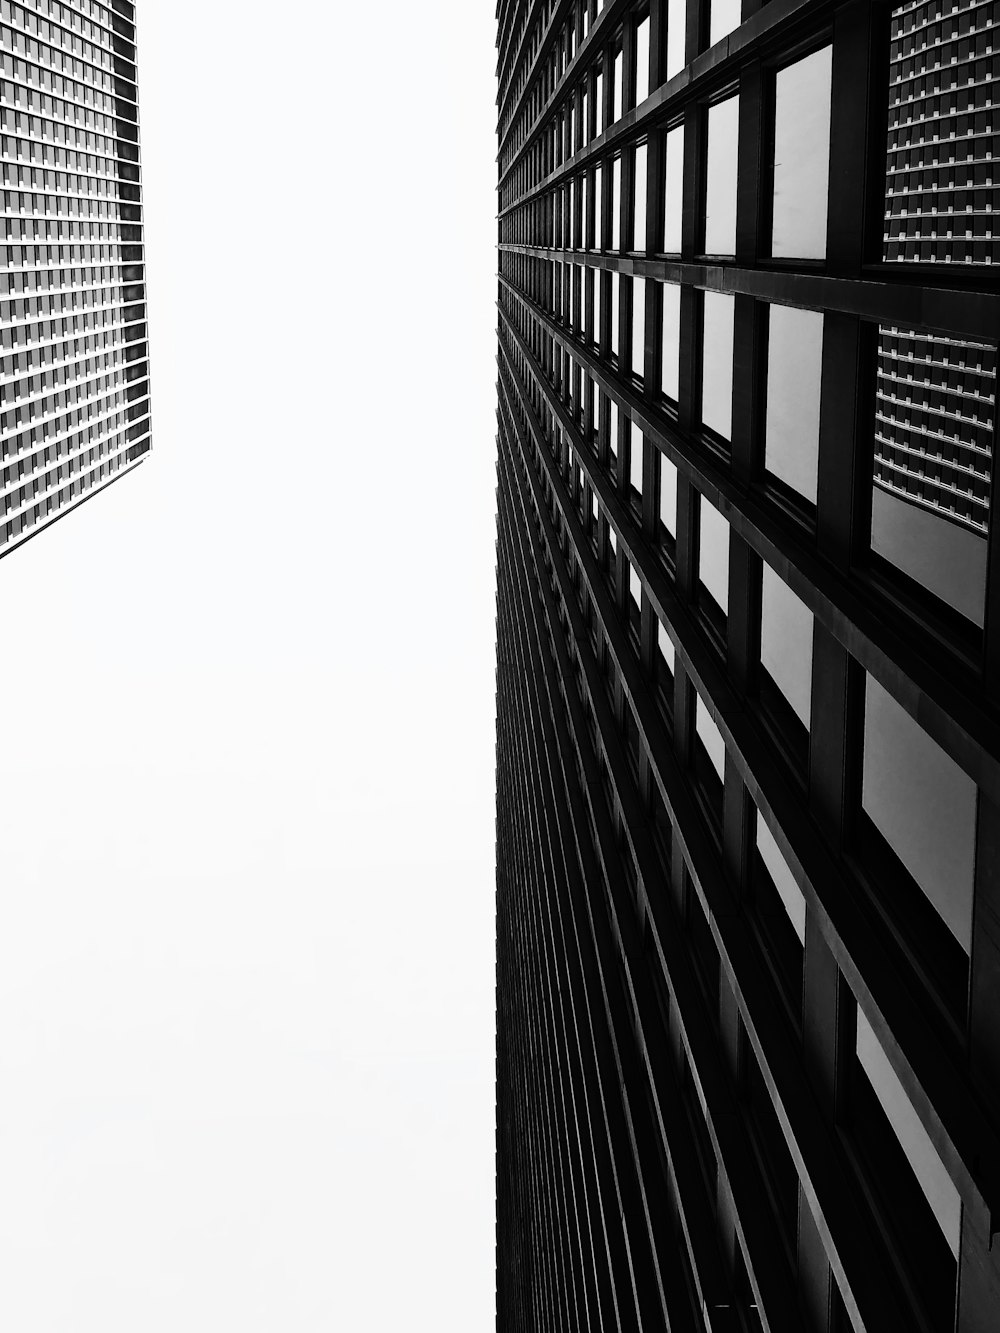 콘크리트 건물의 로우 앵글 사진